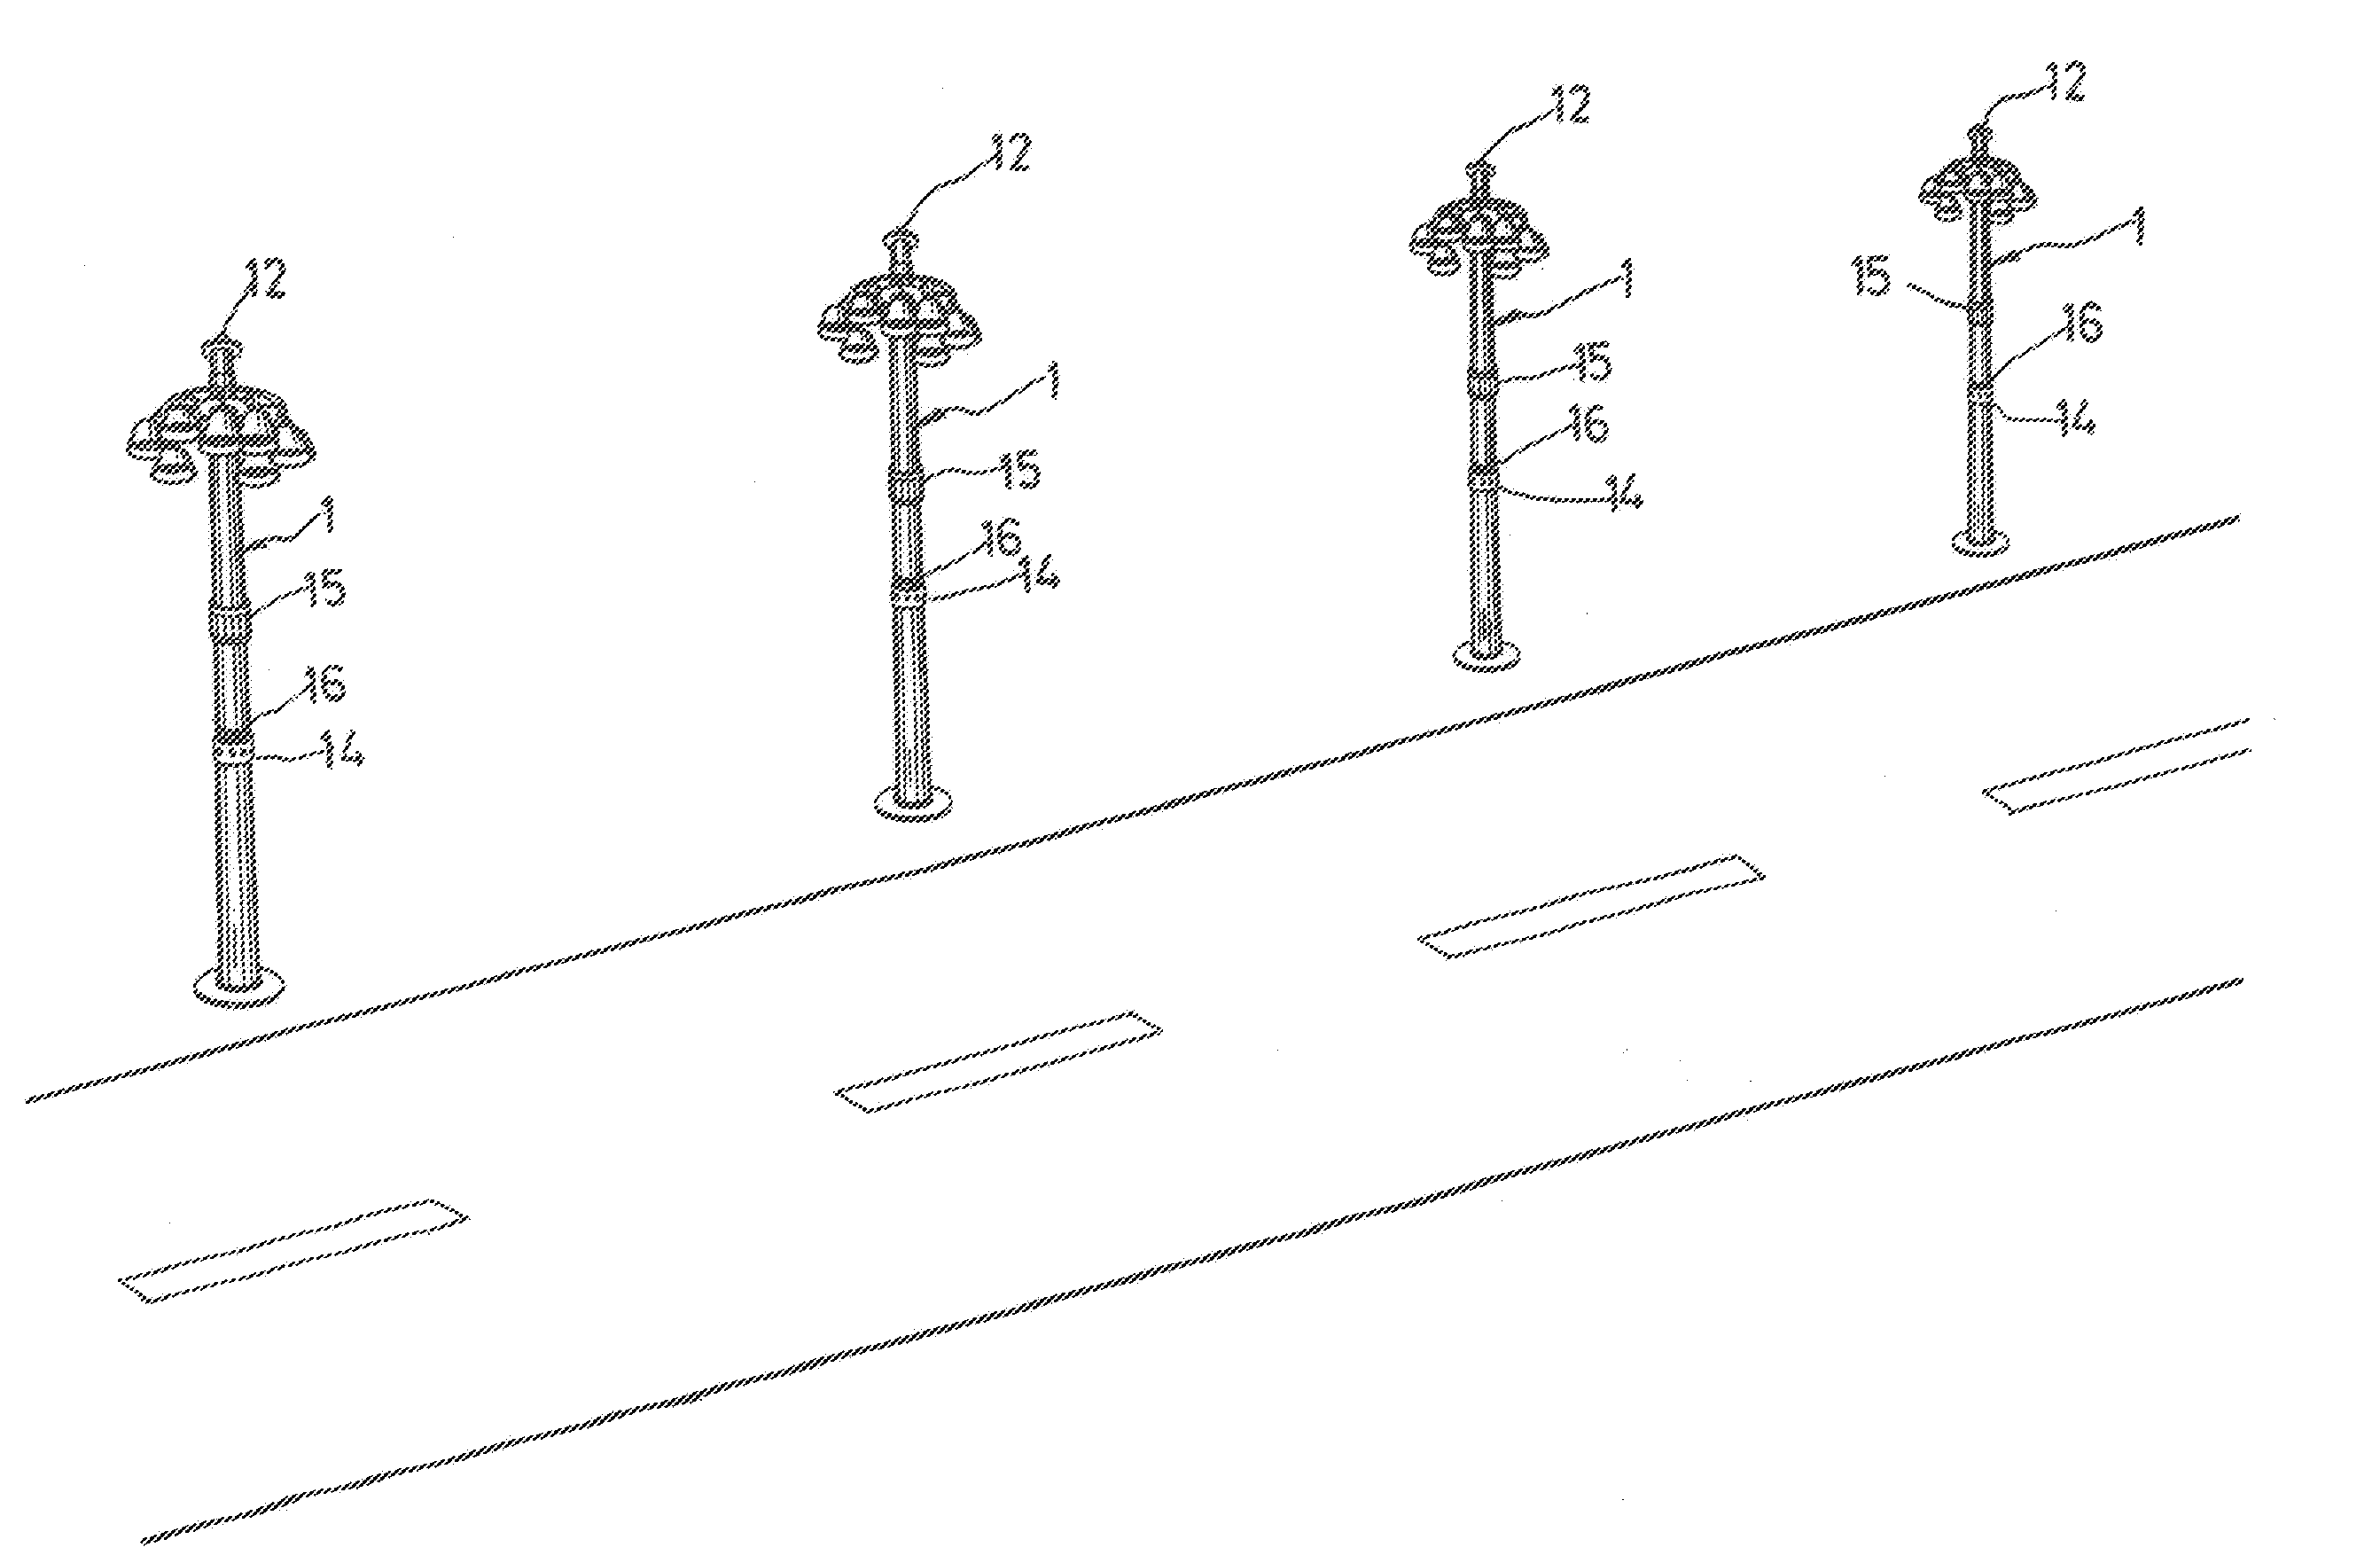 Radio-linked streetlamp